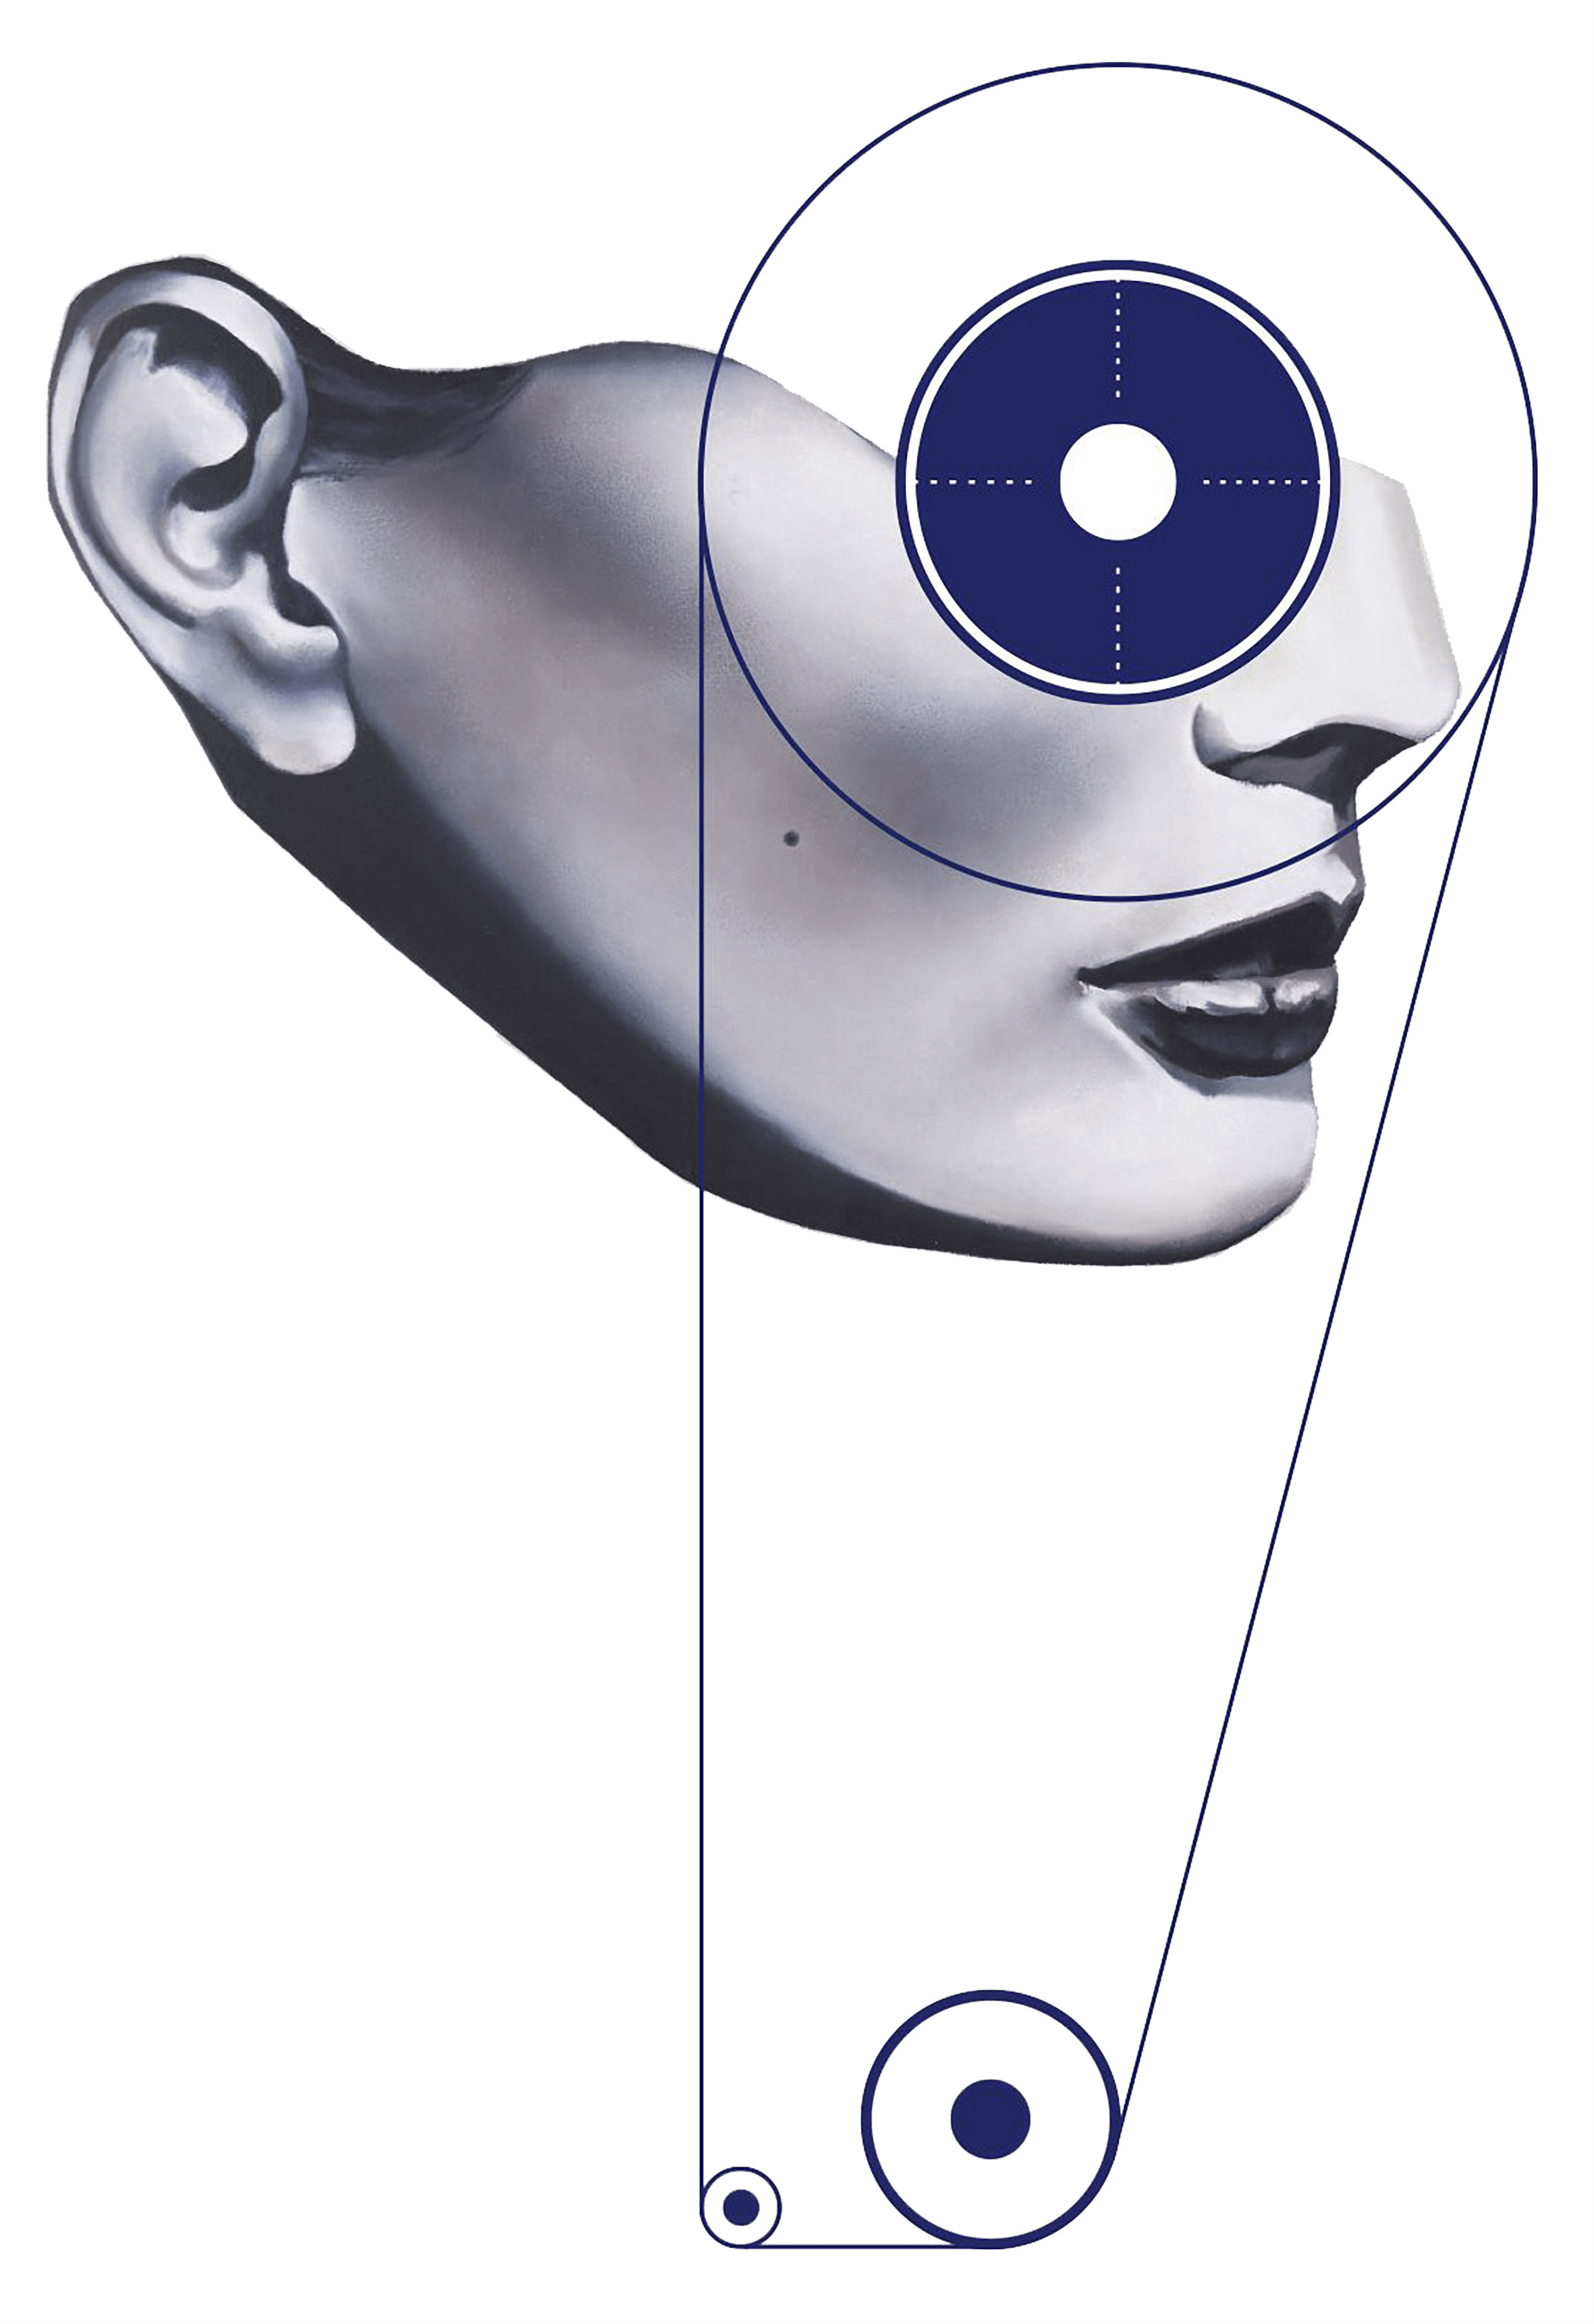 Mensch- Maschine-Illustration zum Thema Sehen